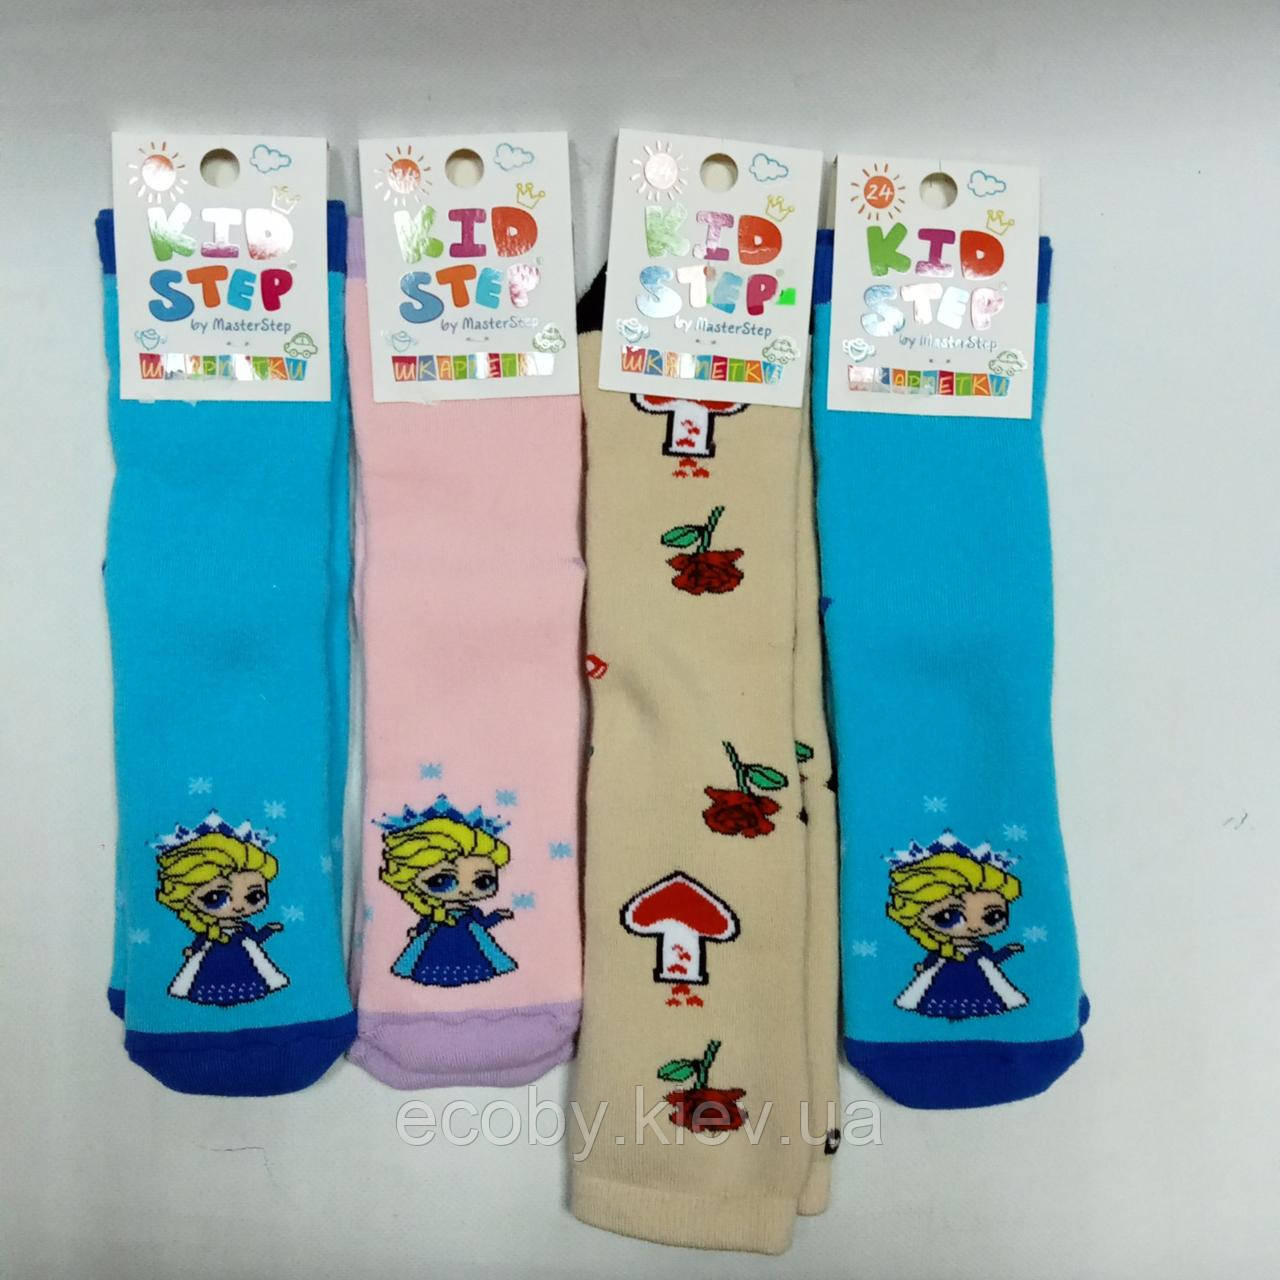 Дитячі шкарпетки  тм Kid Step, розміри35 - 36, махрові